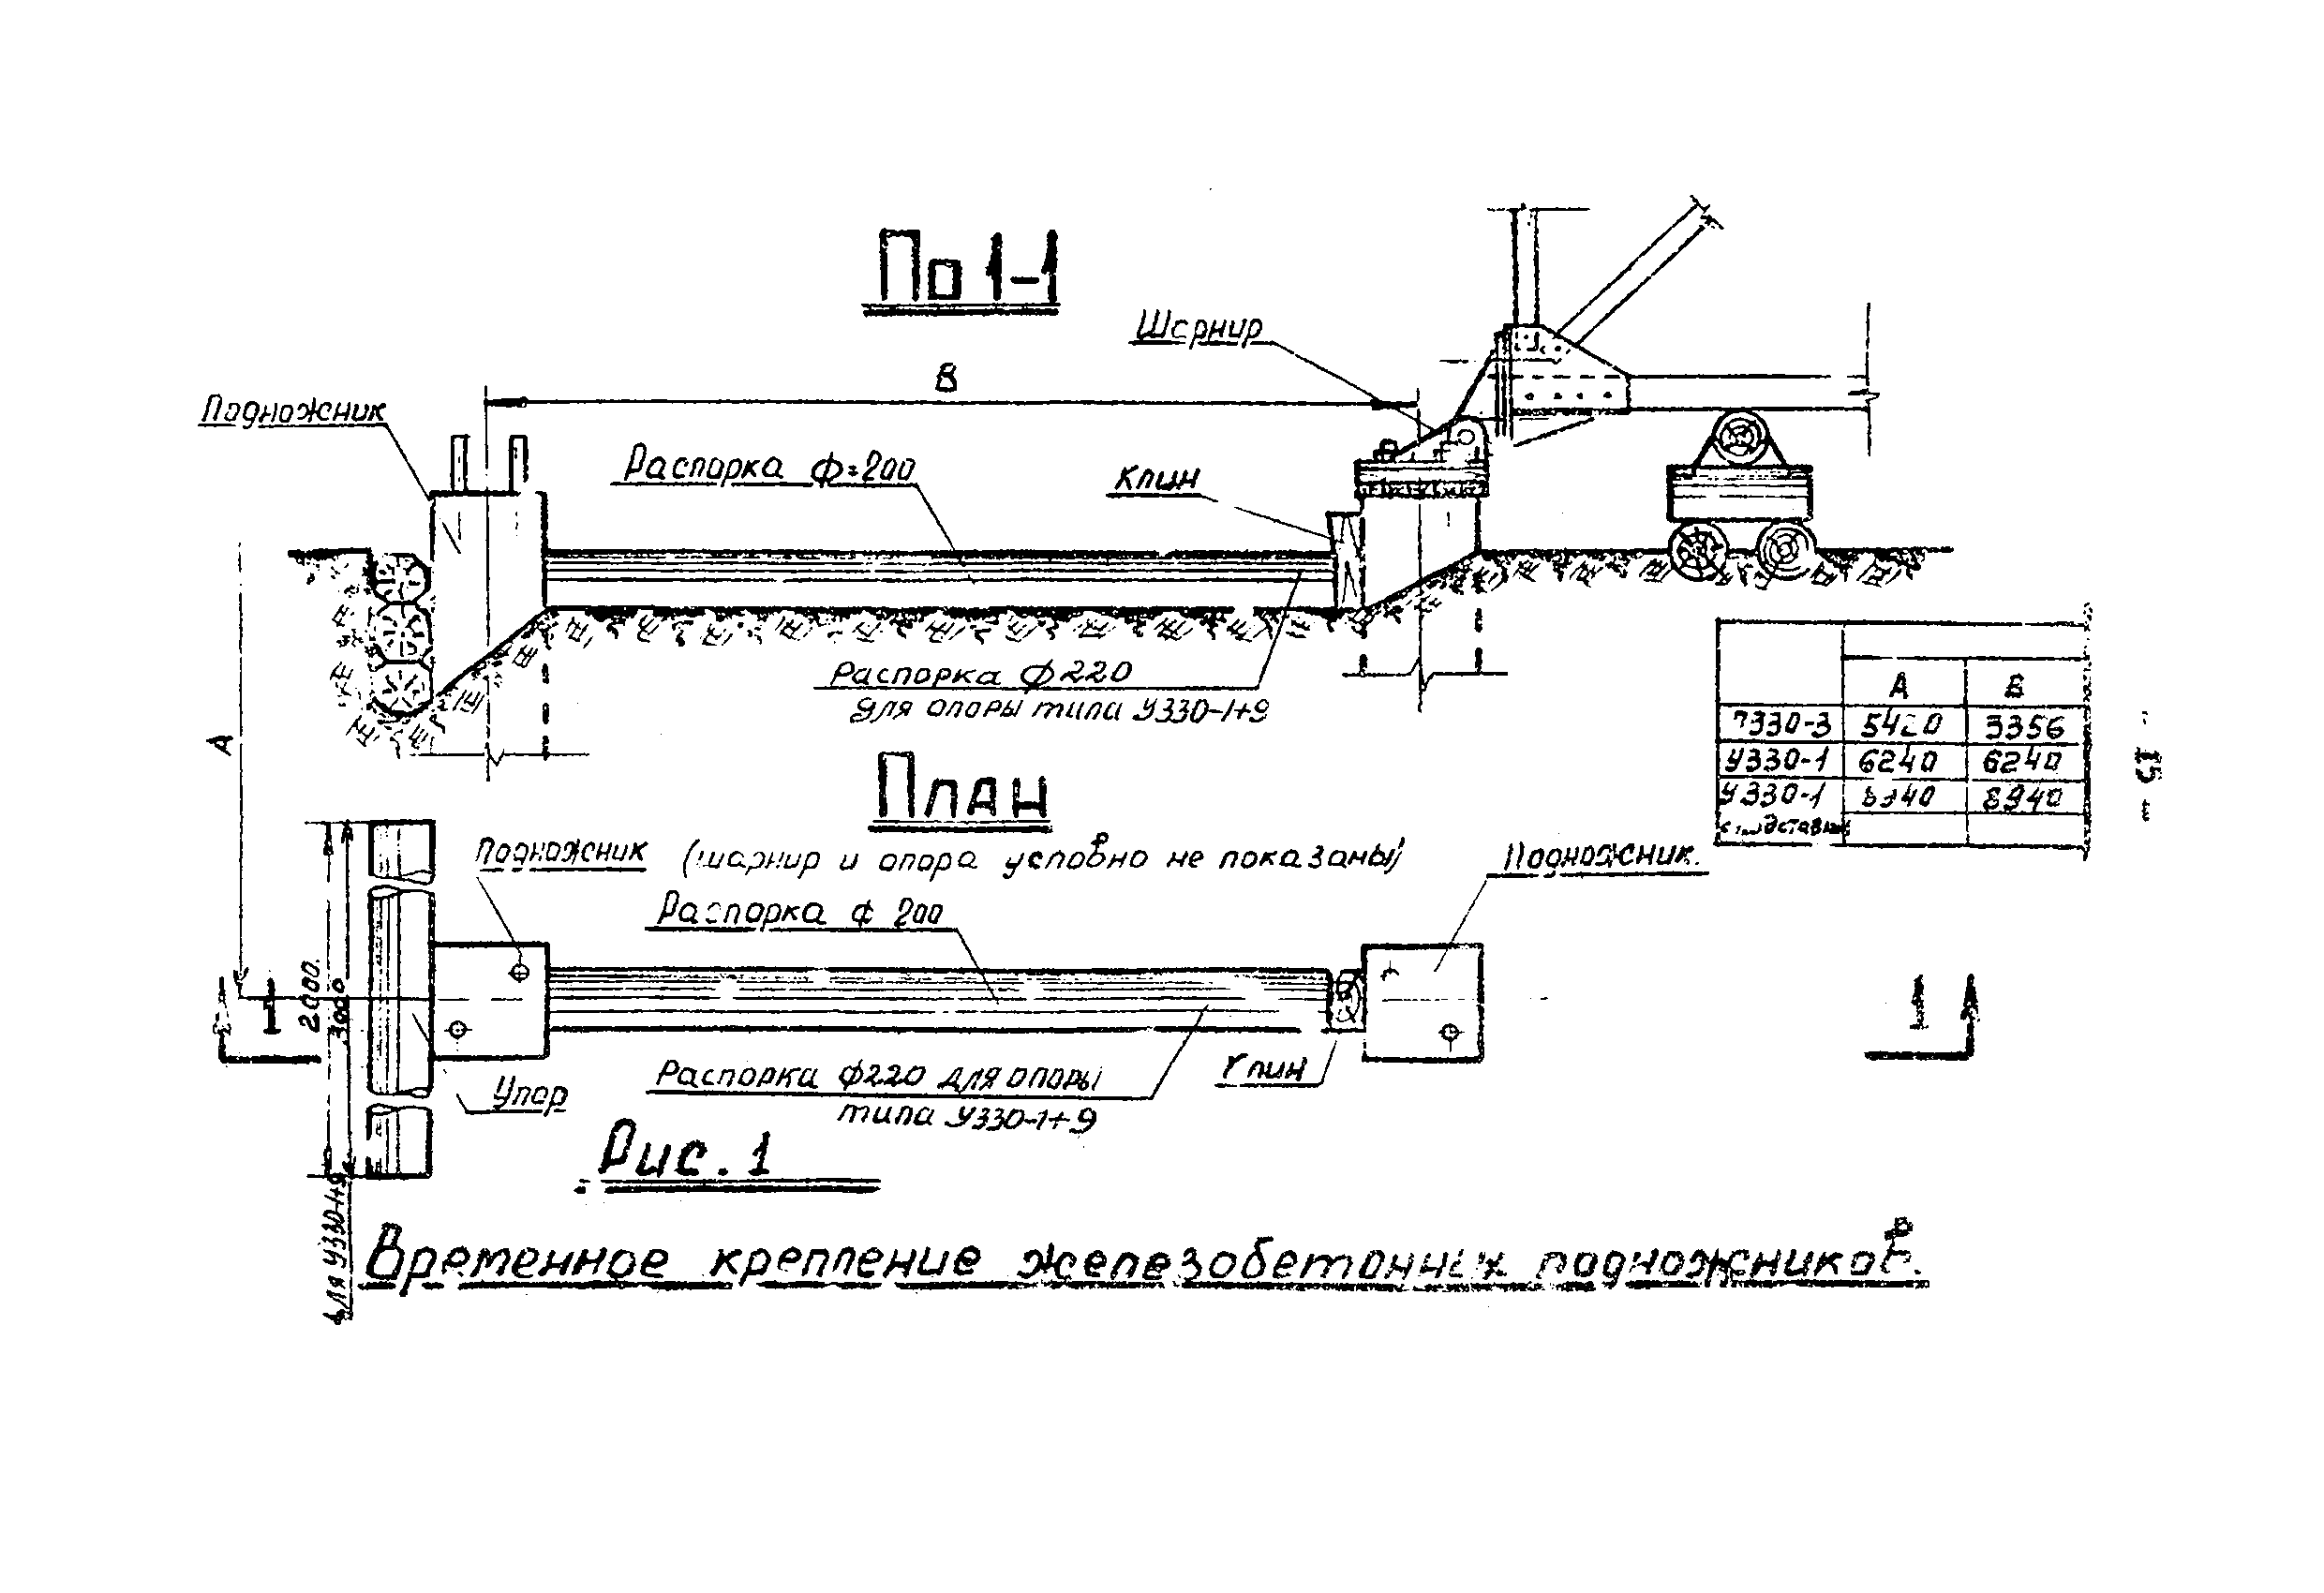 ТТК К-III-27-6